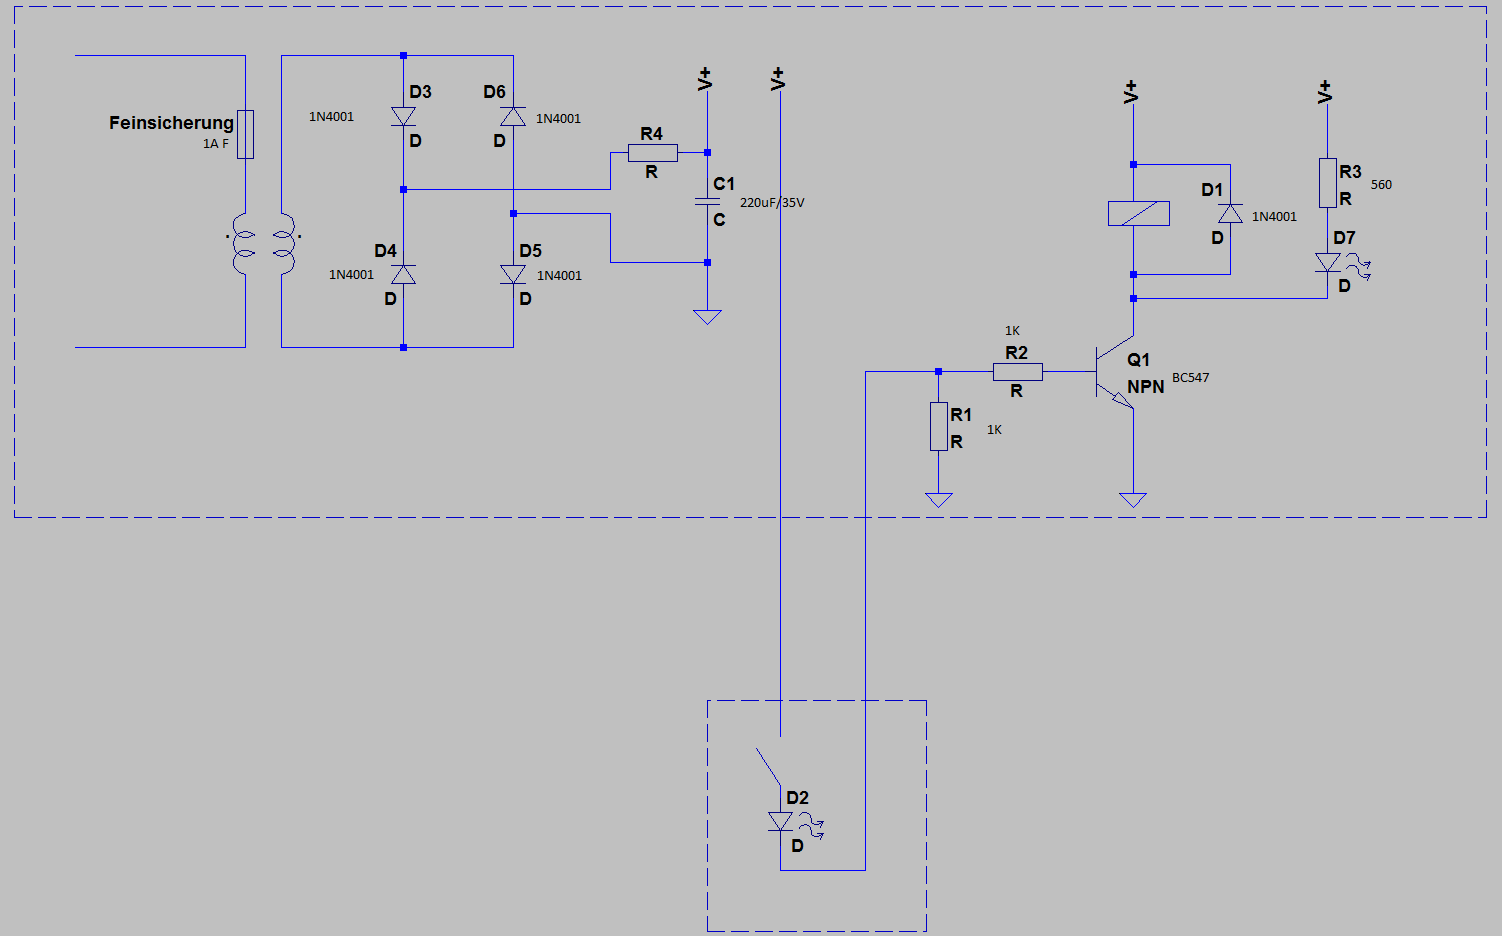 https://www.mikrocontroller.net/attachment/358166/Fernbedienung_mit_Transistor.png